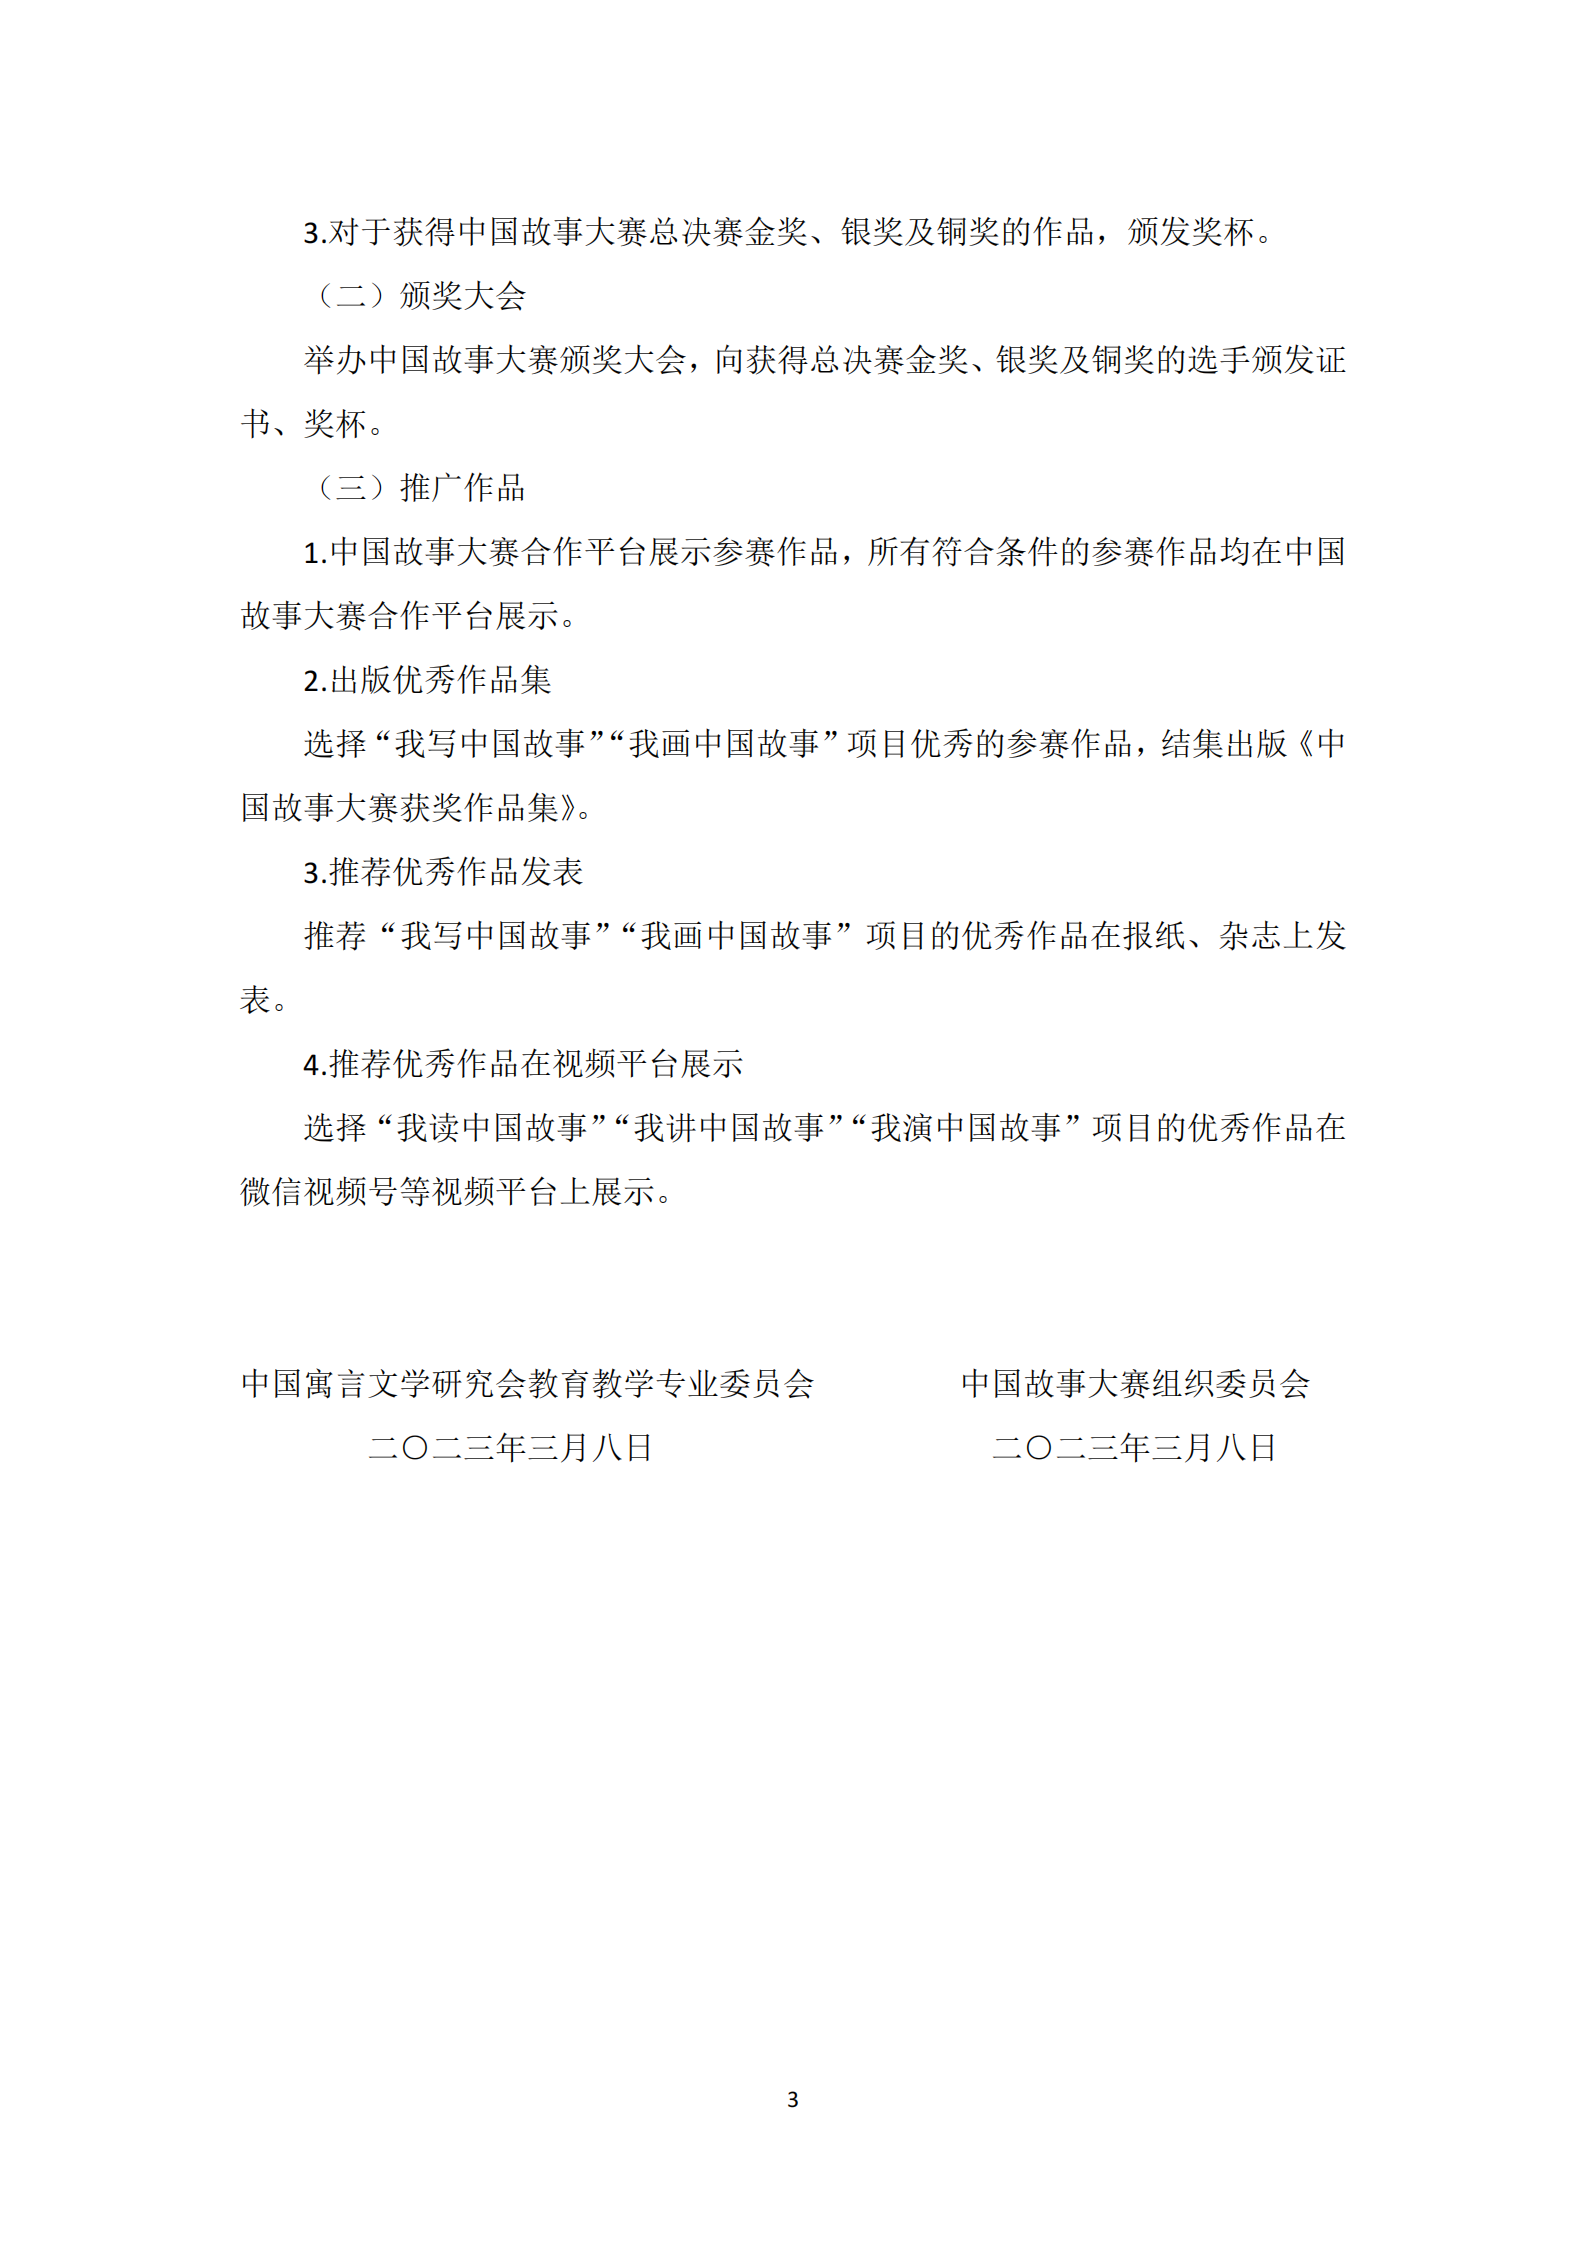 附件二：中国故事大赛细则_02.png